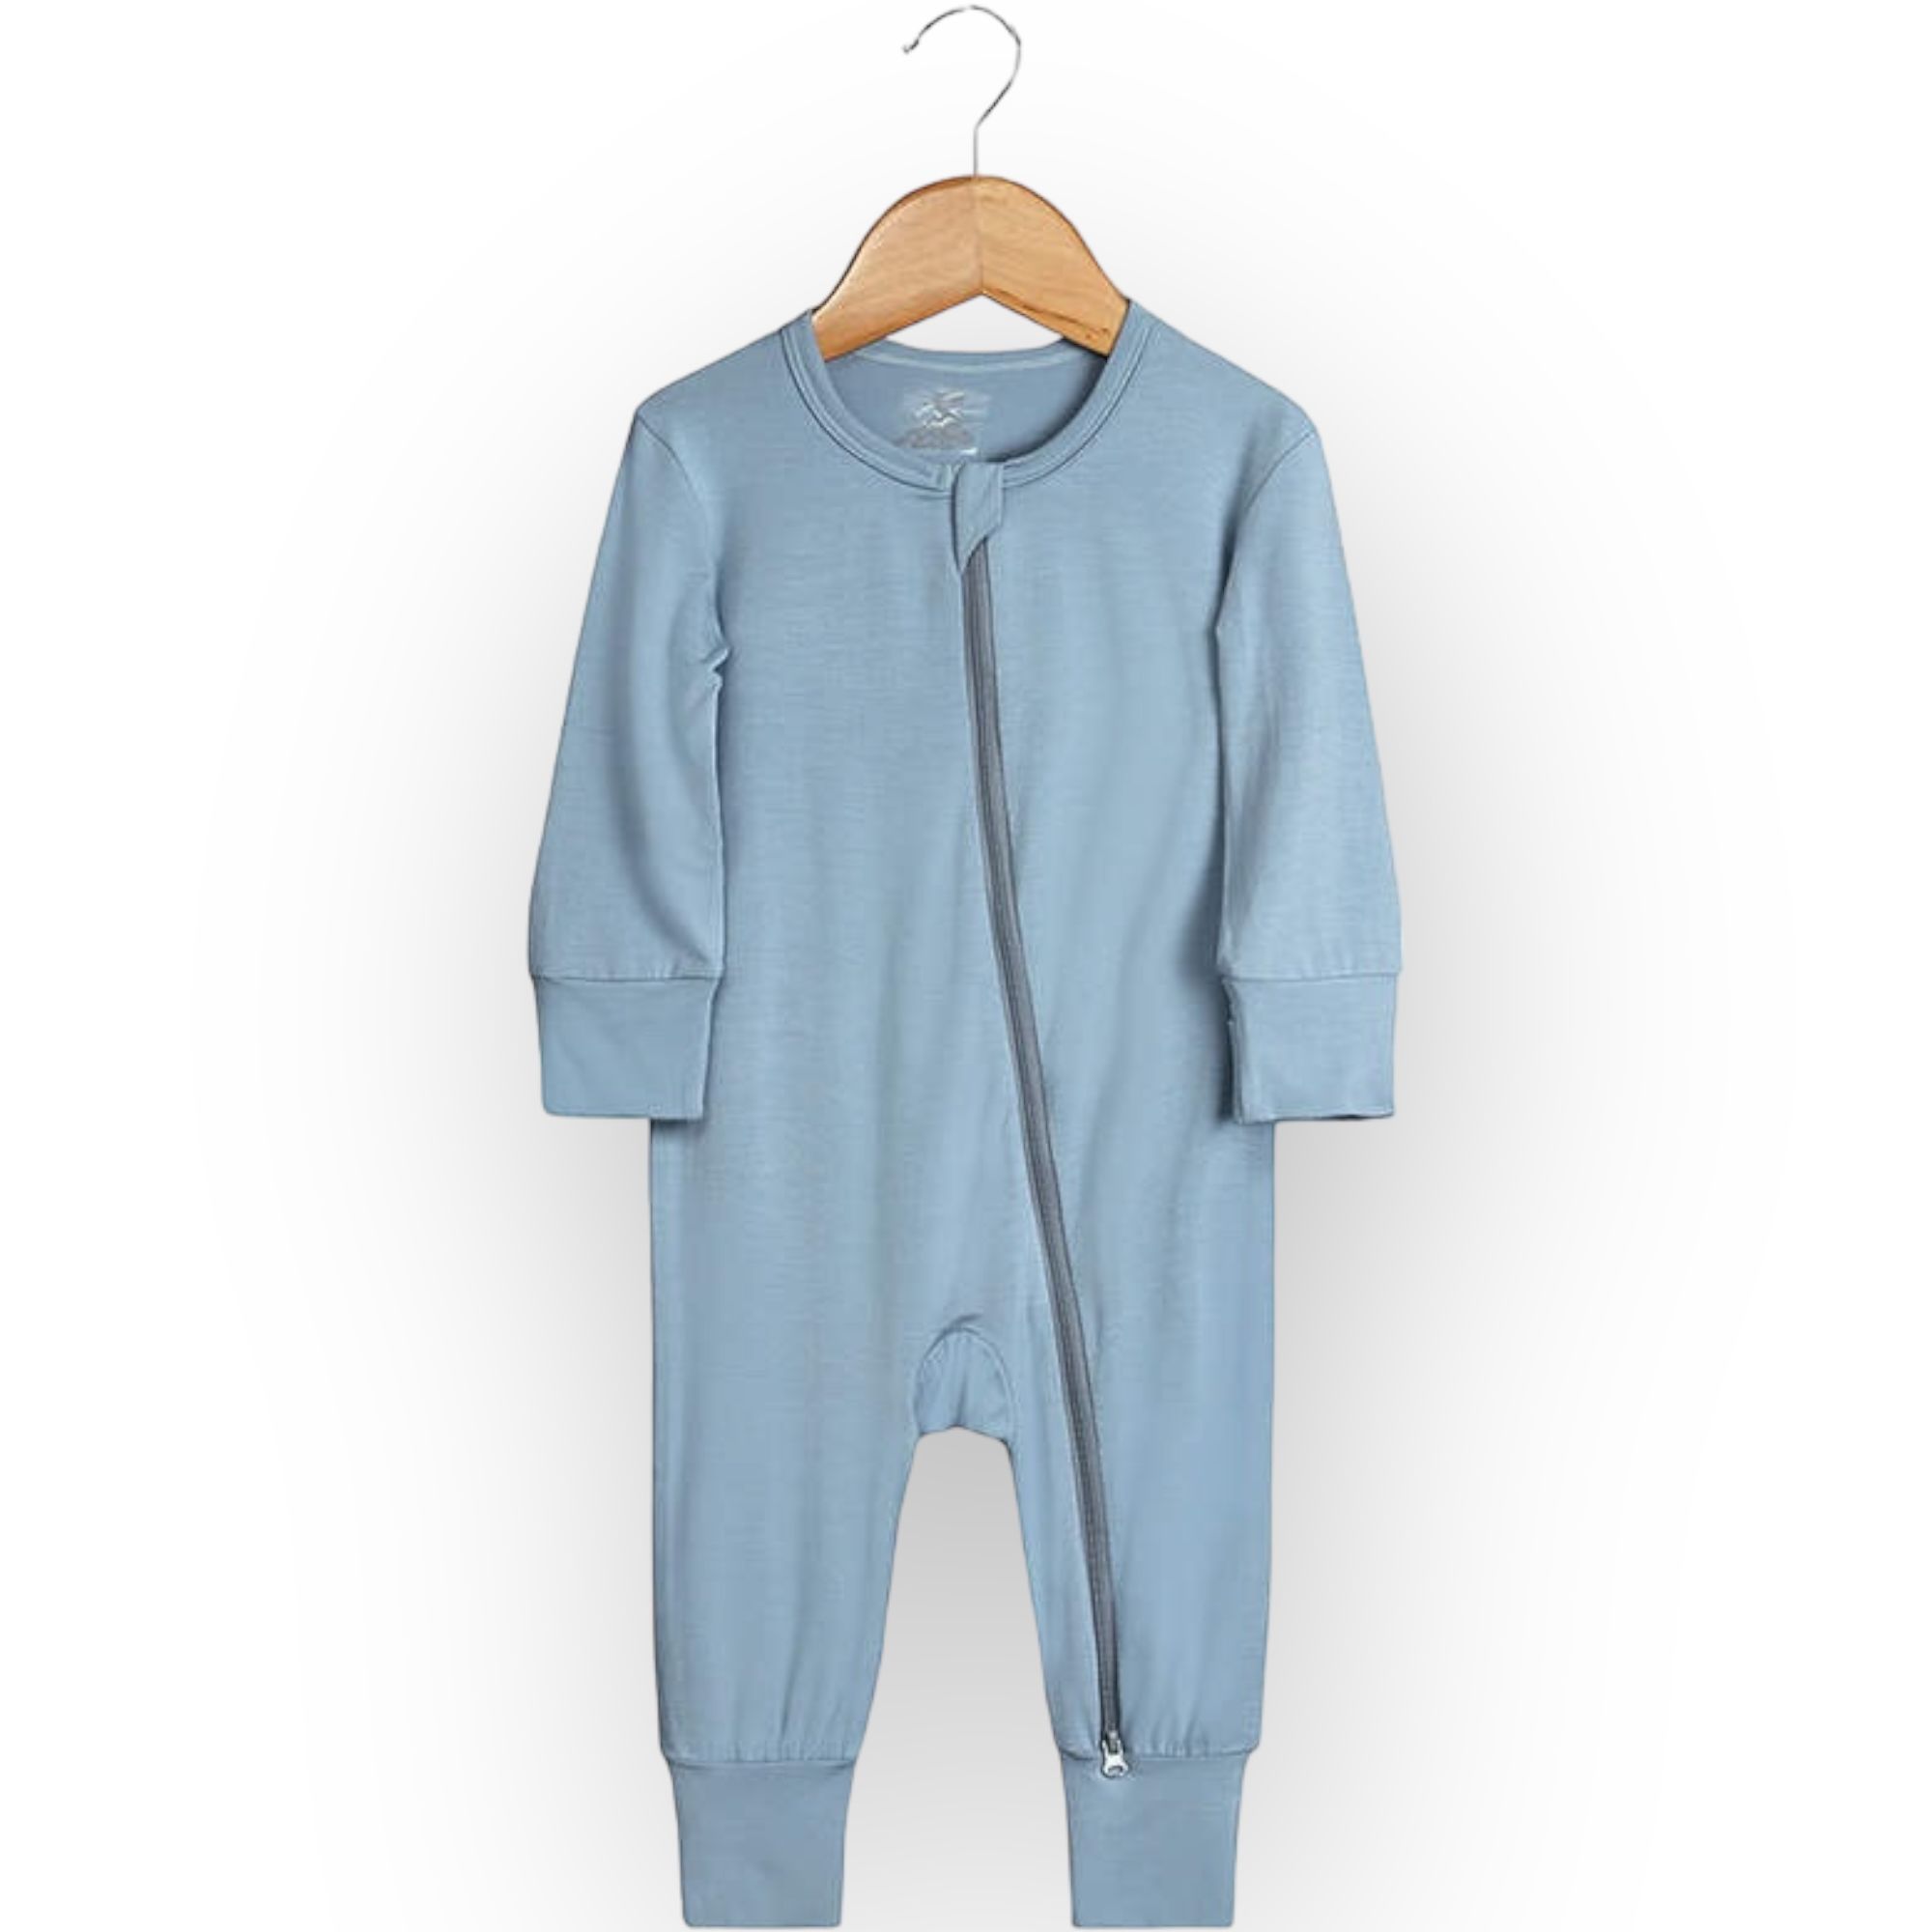 Super Soft 2-Way Zip Sleepsuit